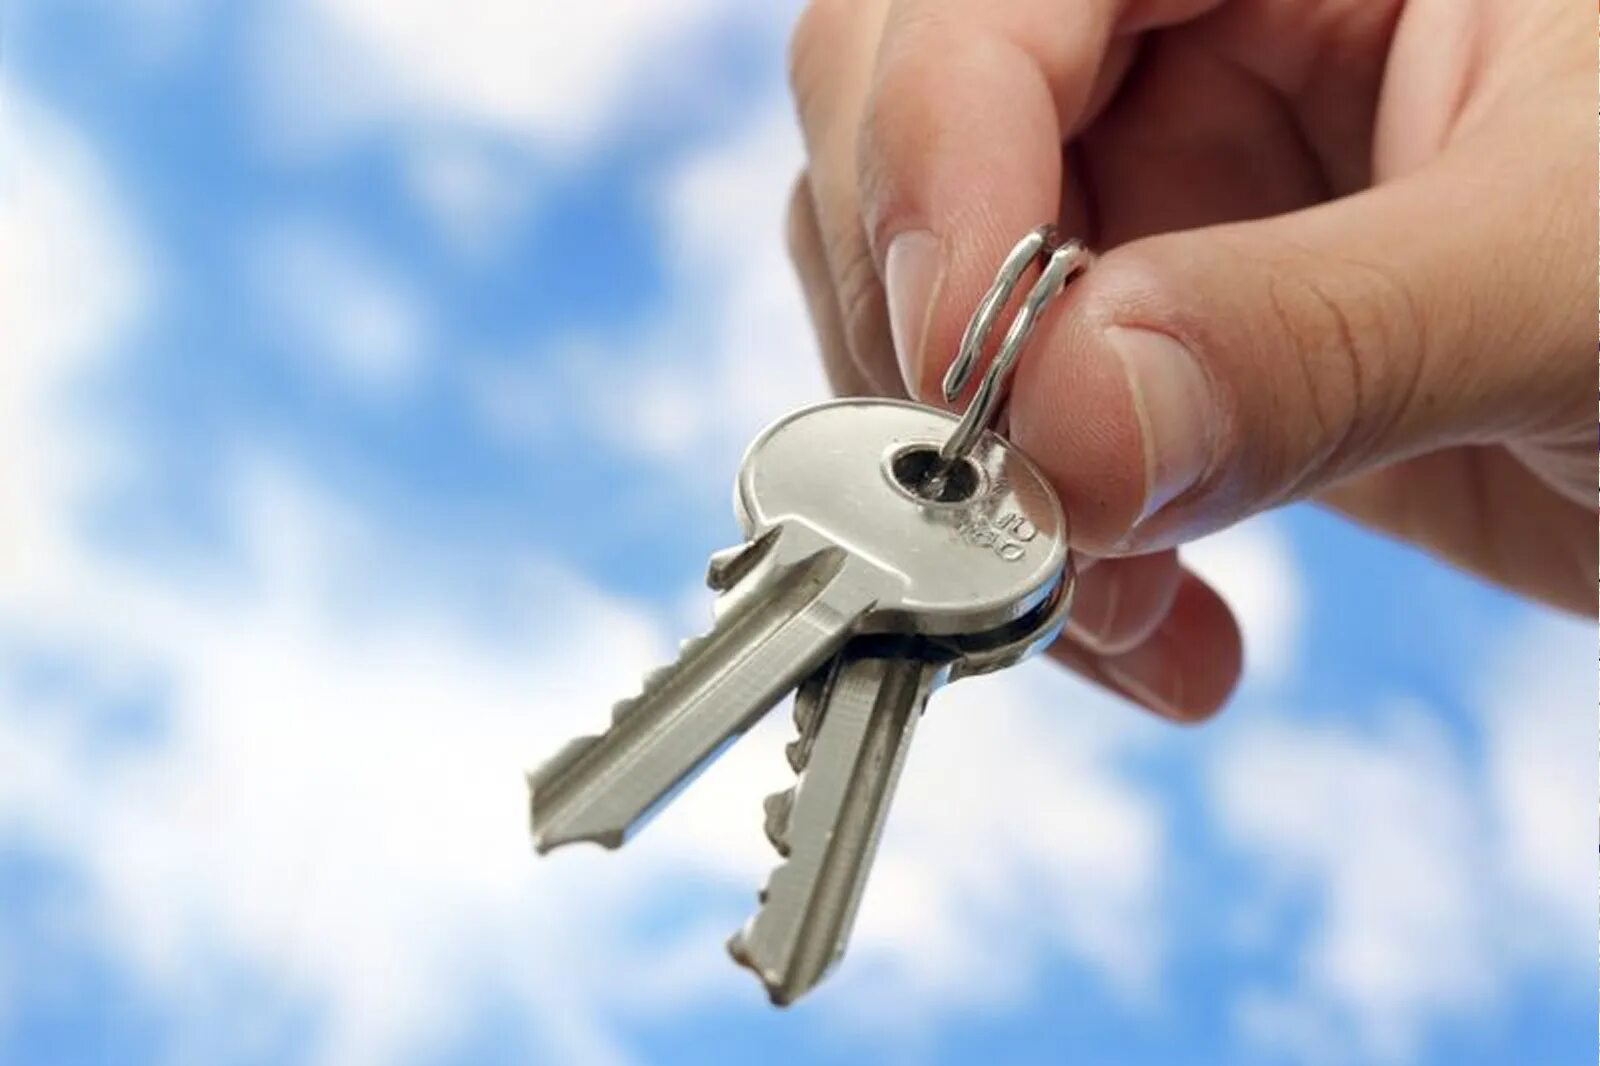 Картинка под ключ. Ключи от квартиры. Ключи от новой квартиры. Новая квартира ключи. Ключи от дома.